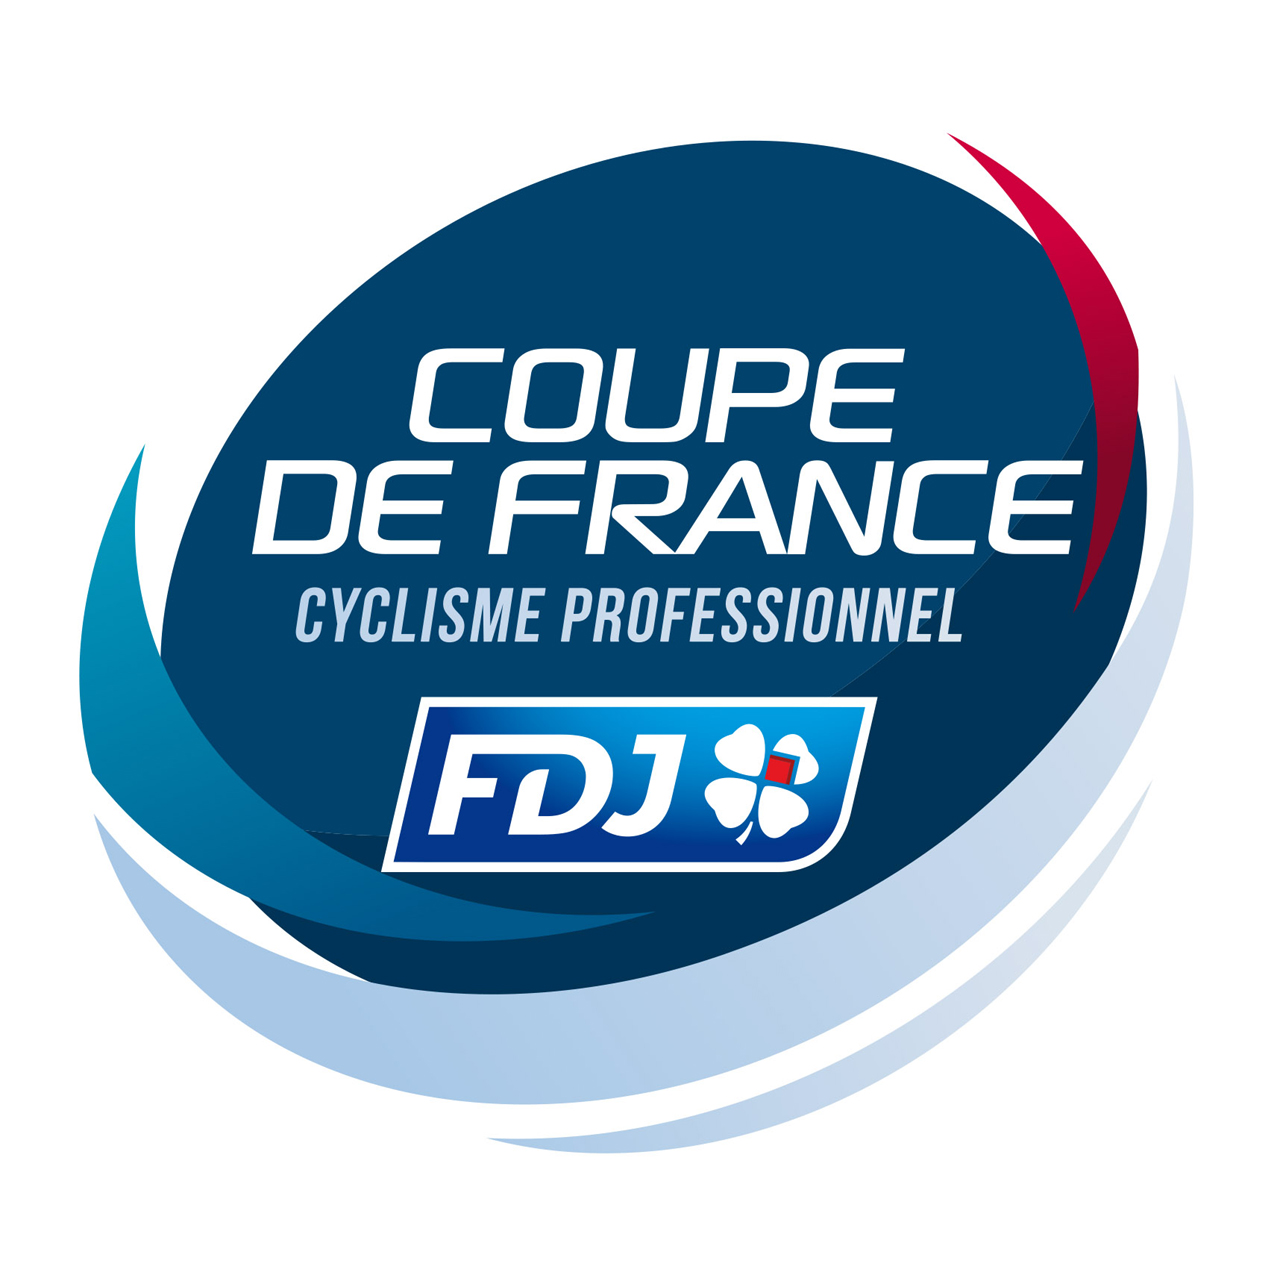 Coupe de France - FDJ 2019